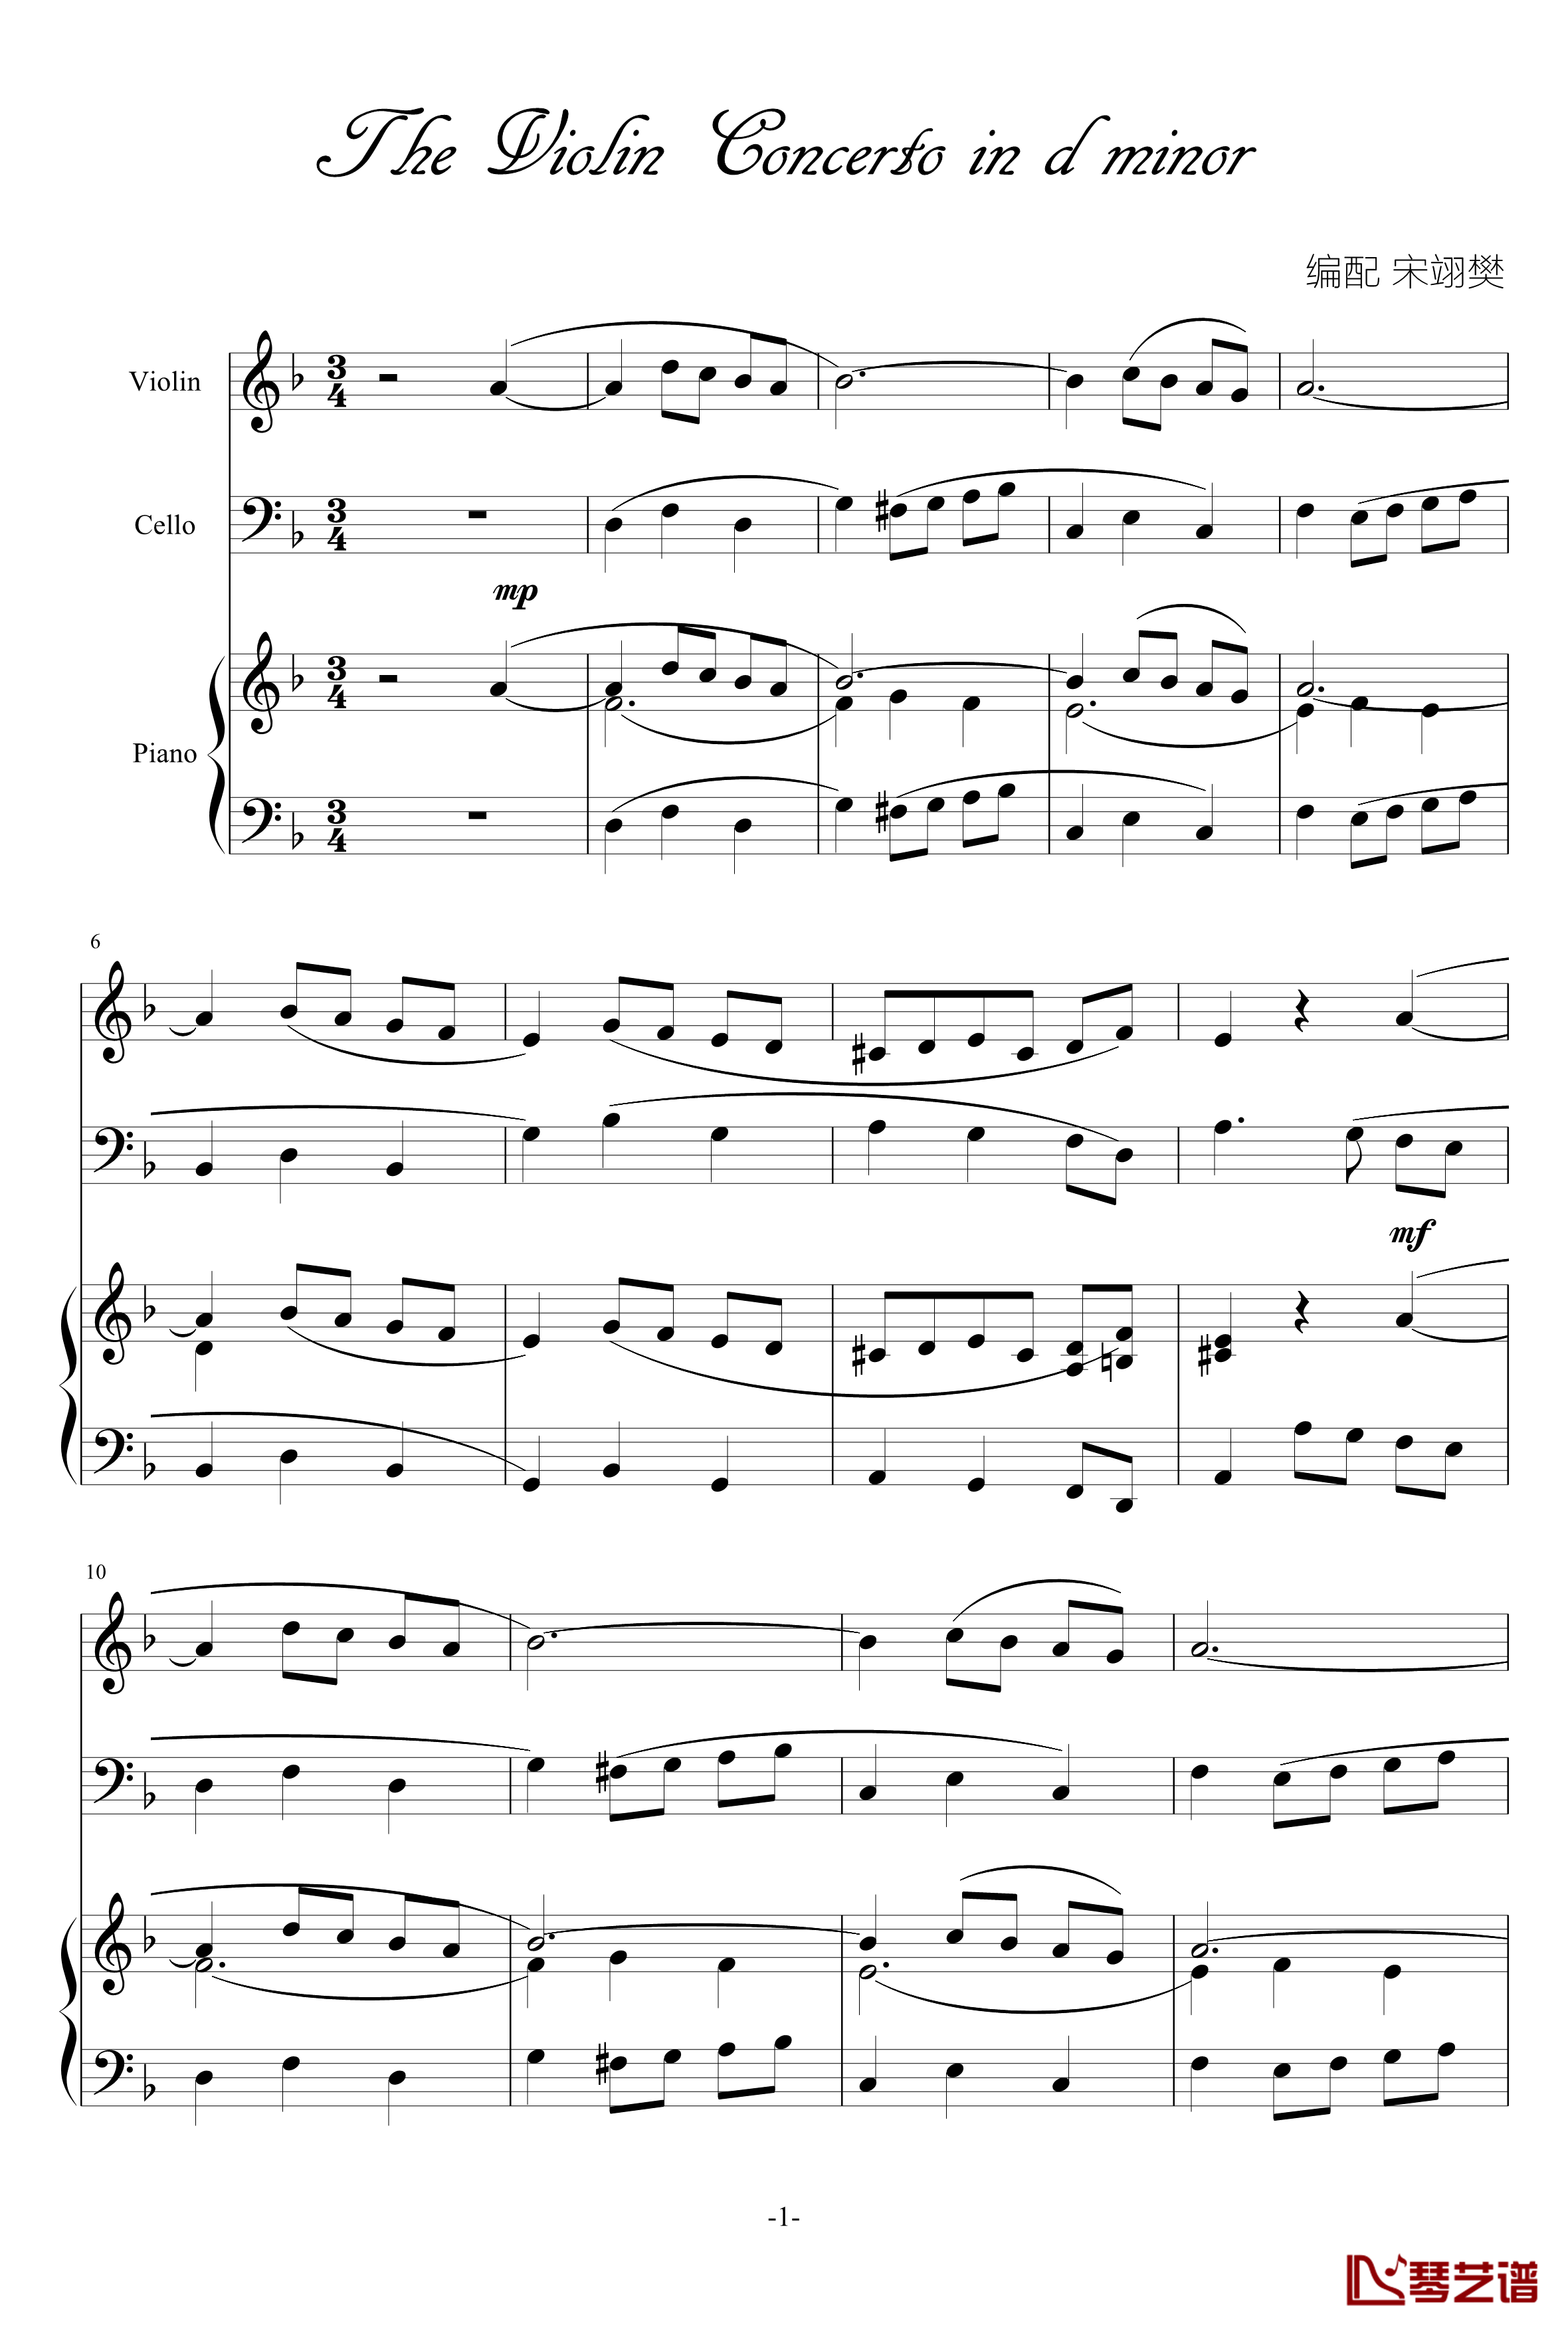 巴洛克风格小提琴协奏曲第一乐章钢琴谱-巴洛克1